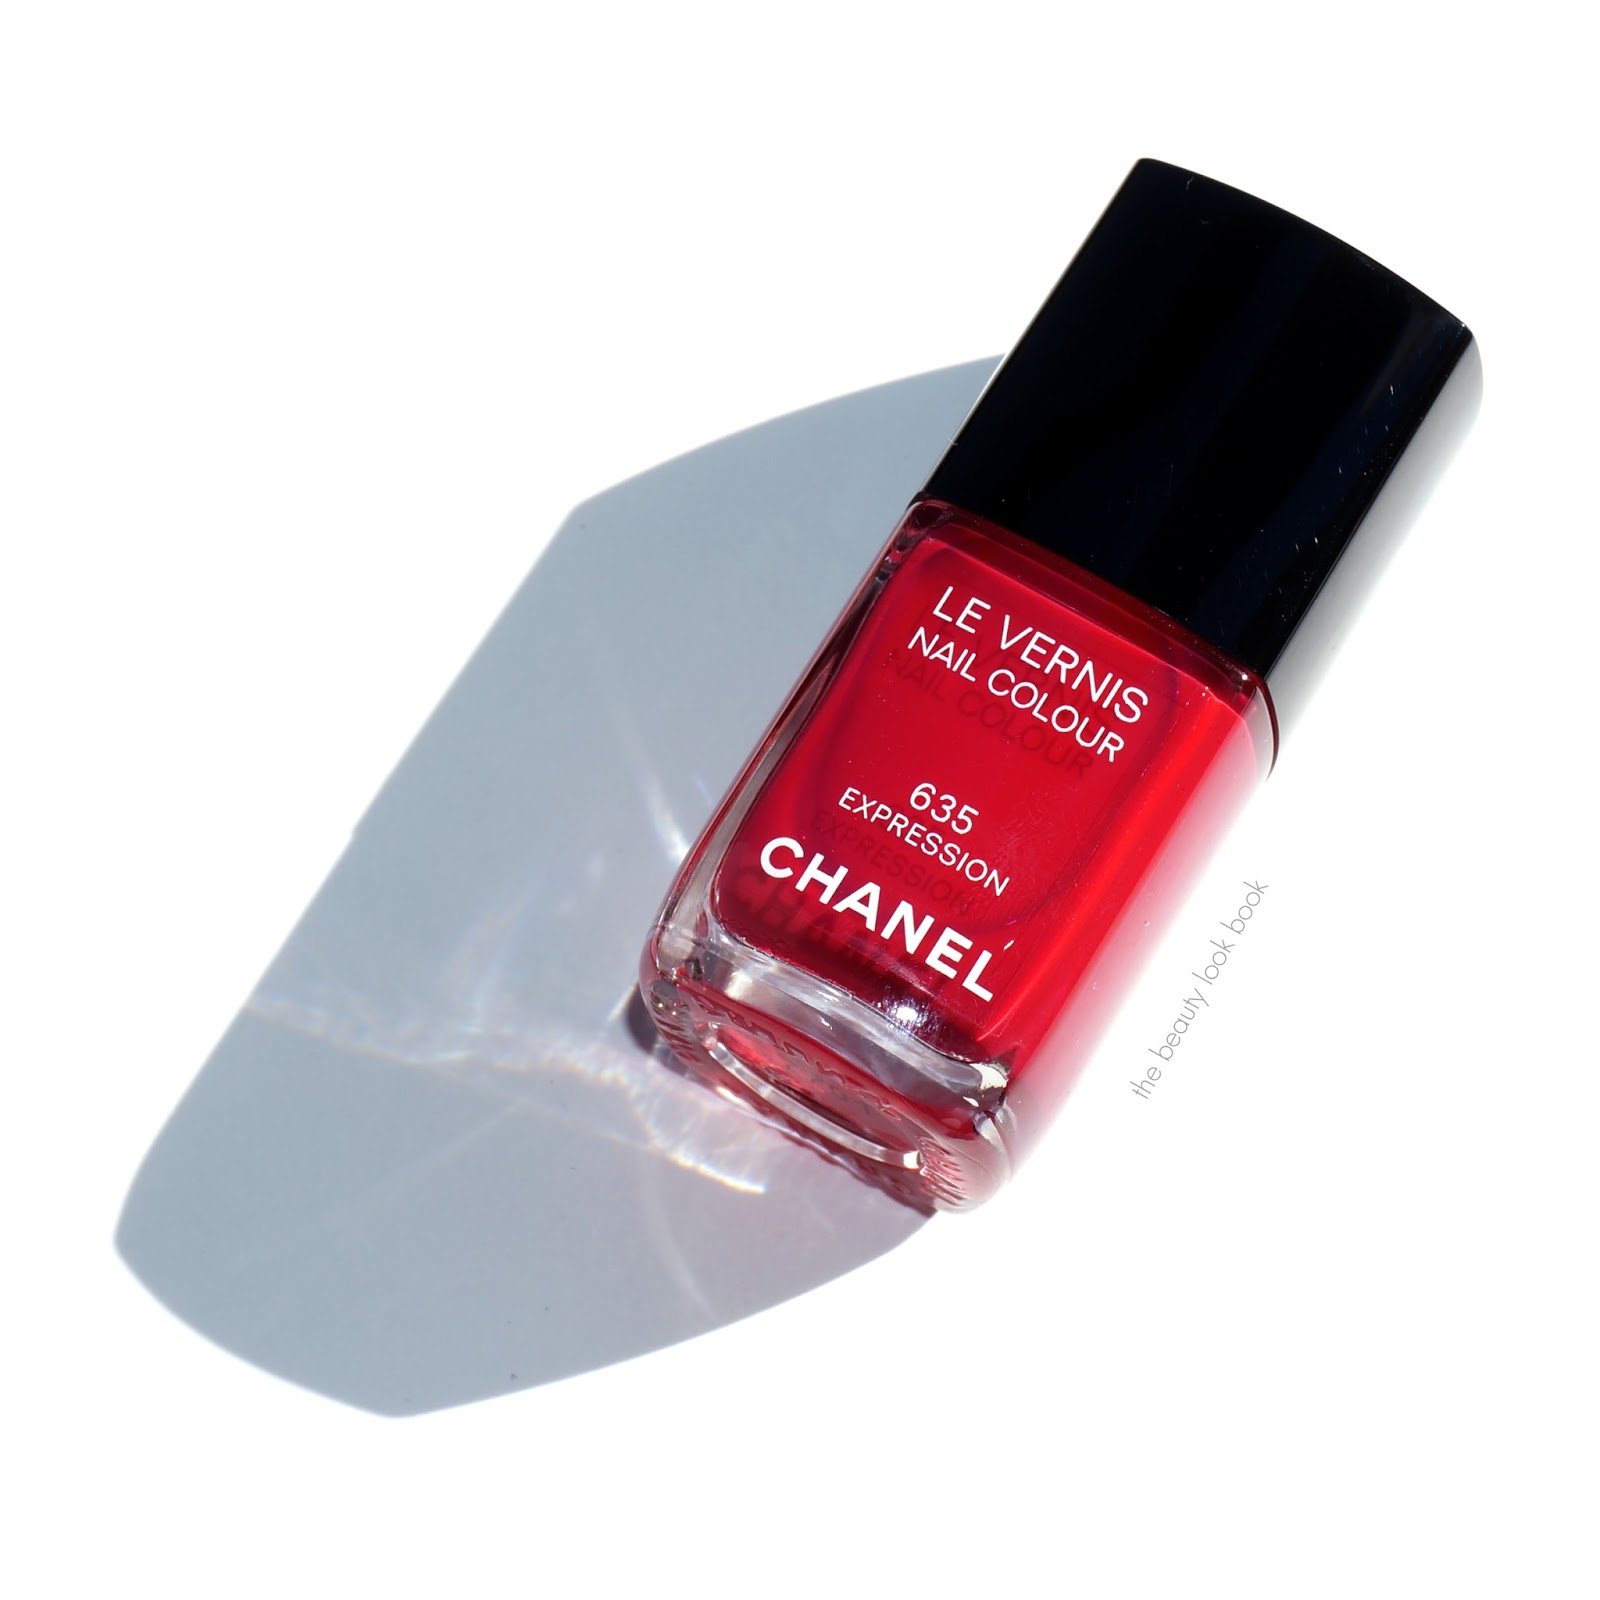 Chanel Le Vernis Nail Colour - 623 Mirabella – Nail Polish Life